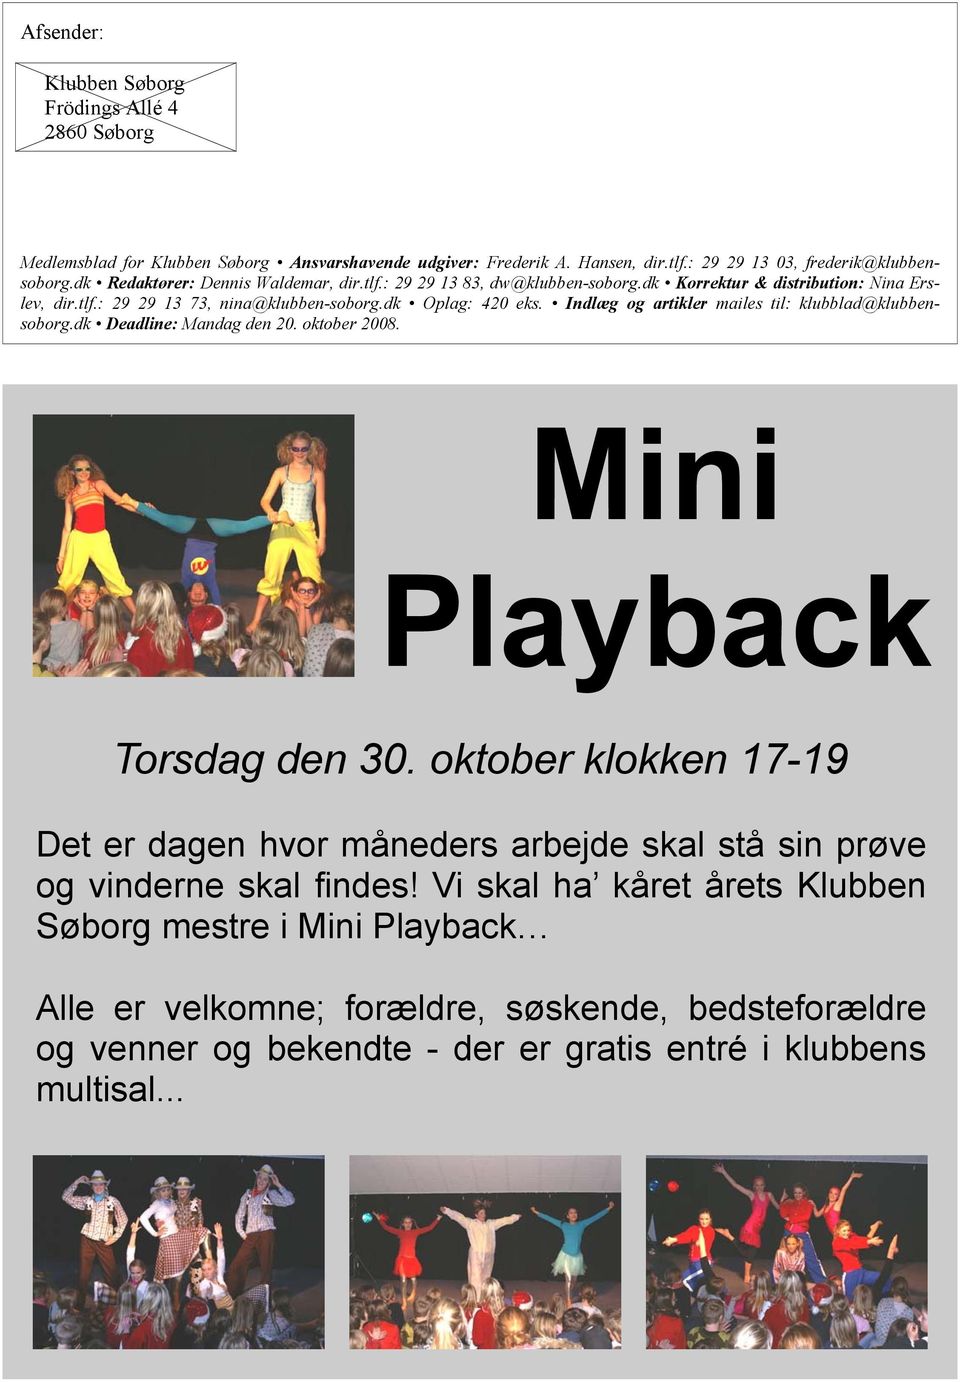 Indlæg og artikler mailes til: klubblad@klubbensoborg.dk Deadline: Mandag den 20. oktober 2008. Mini Playback Torsdag den 30.